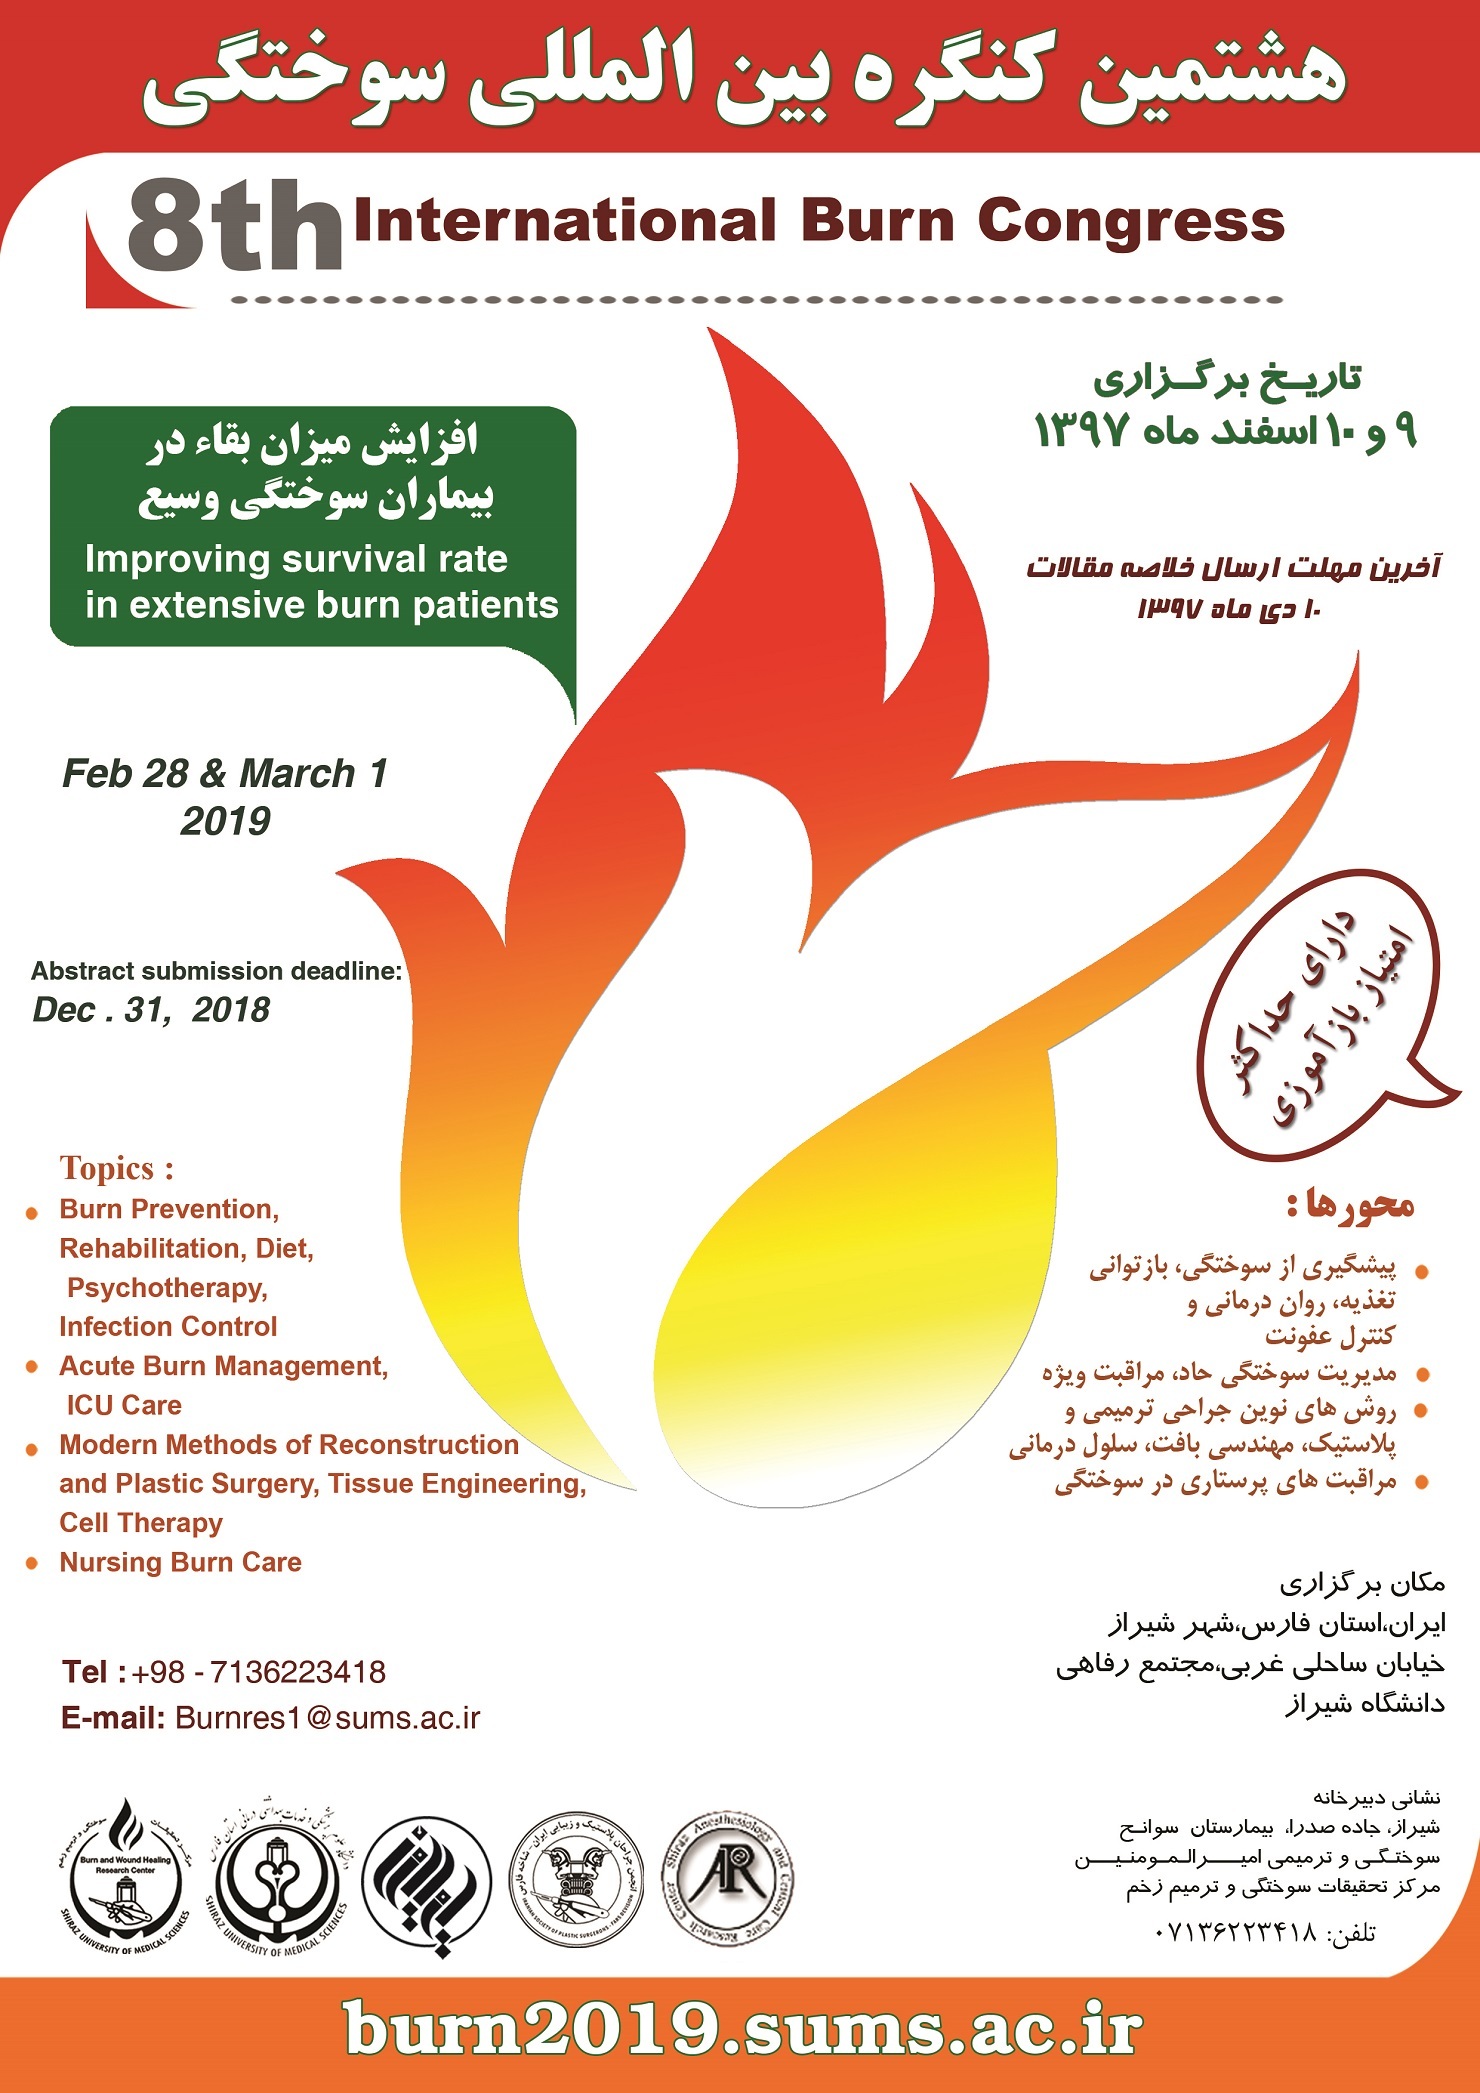 فراخوان همایش بین المللی سوختگی در شیراز